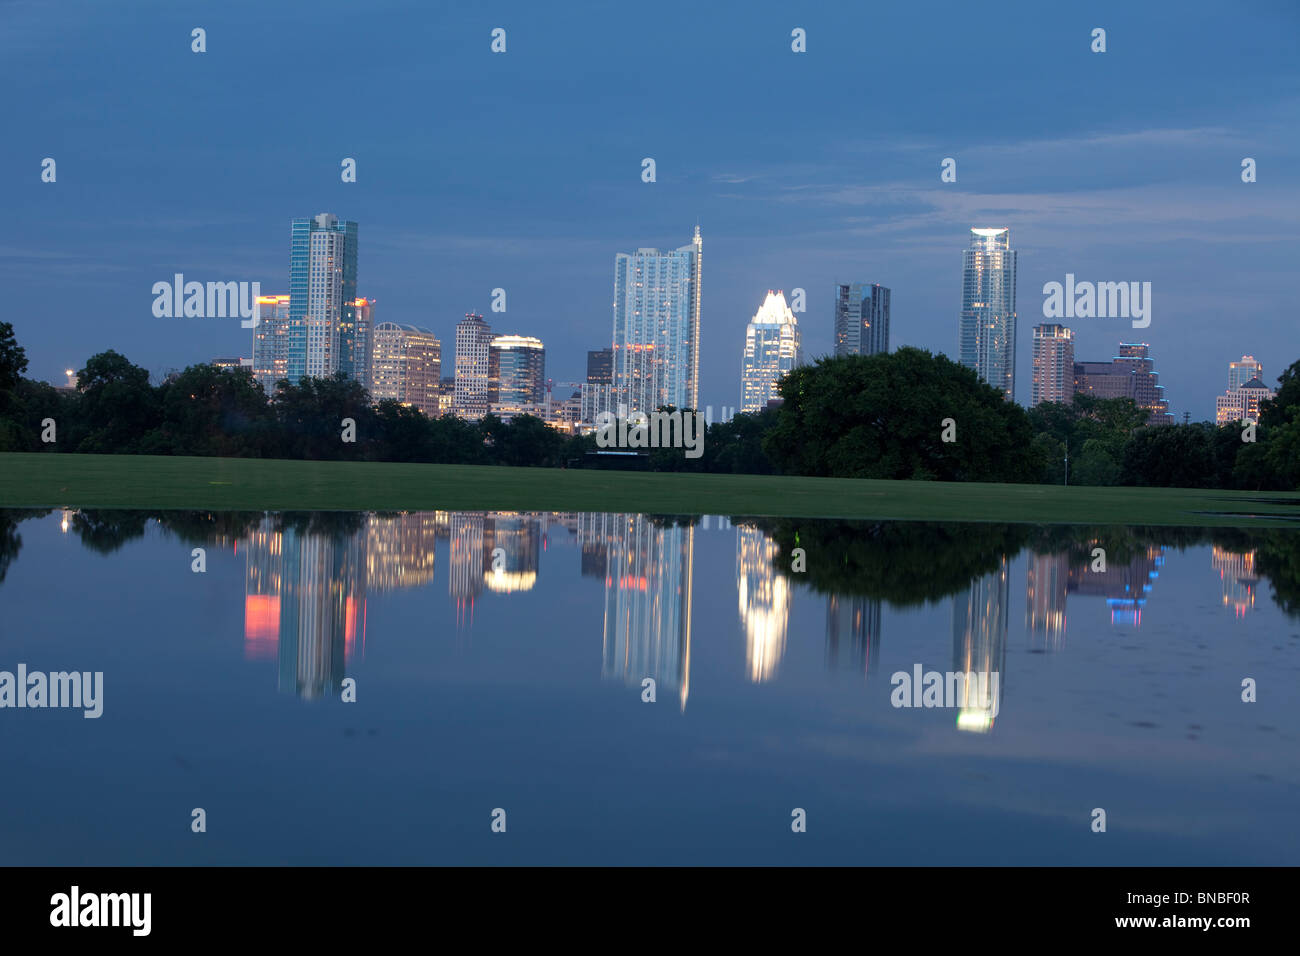 L'Austin, Texas, Skyline se reflète dans une grande piscine d'eau de pluie du centre-ville de ZIlker Park Banque D'Images